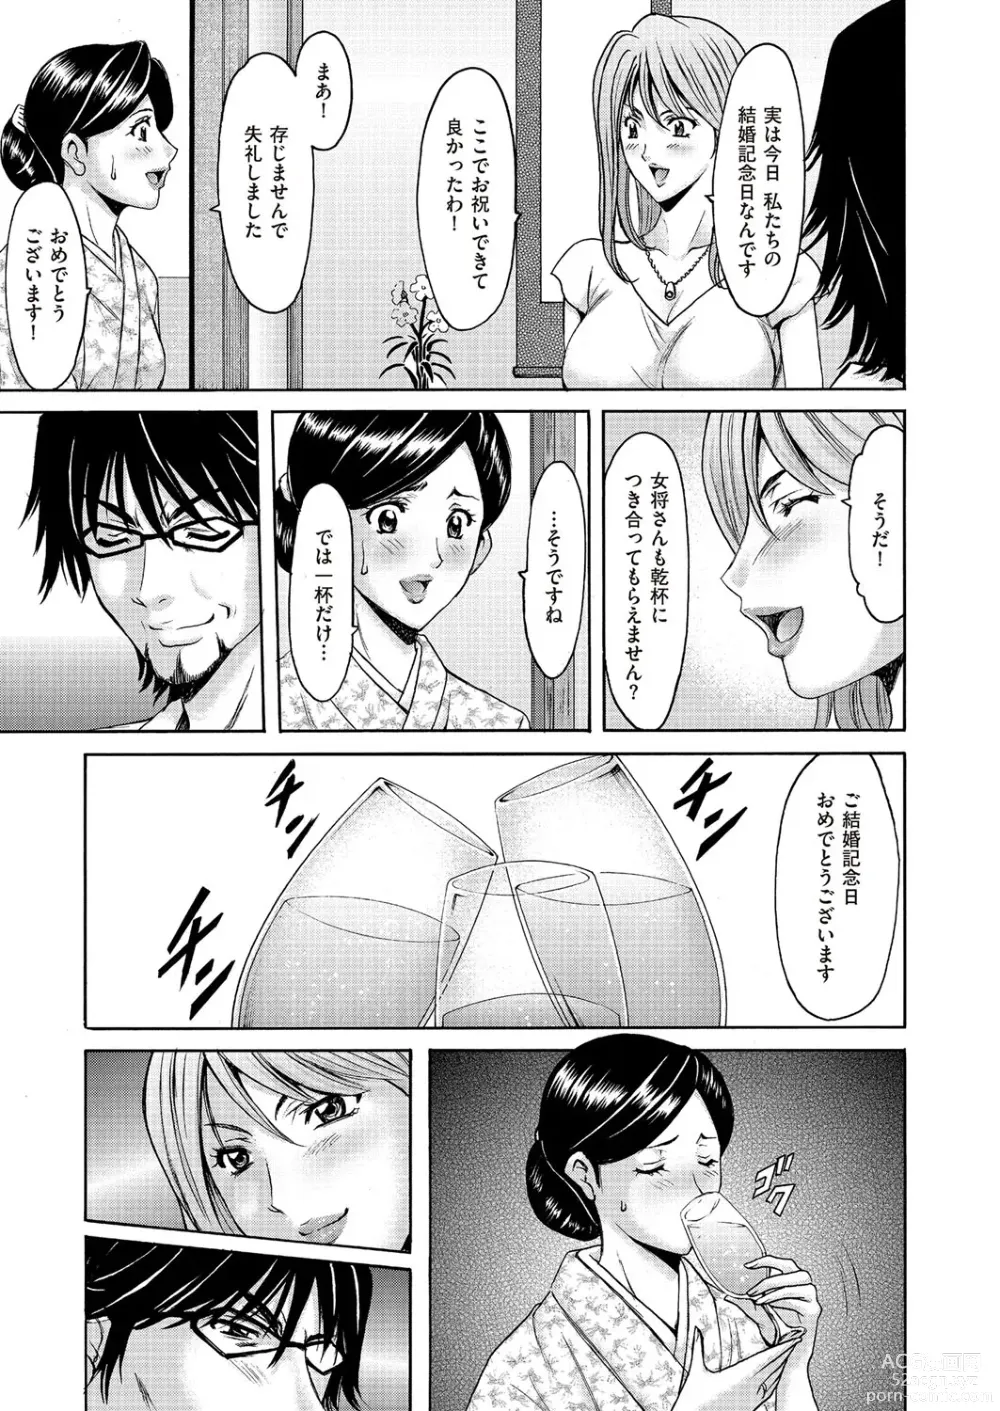 Page 6 of manga Kouin okasareta huuhu no kizuna Ch.1-3